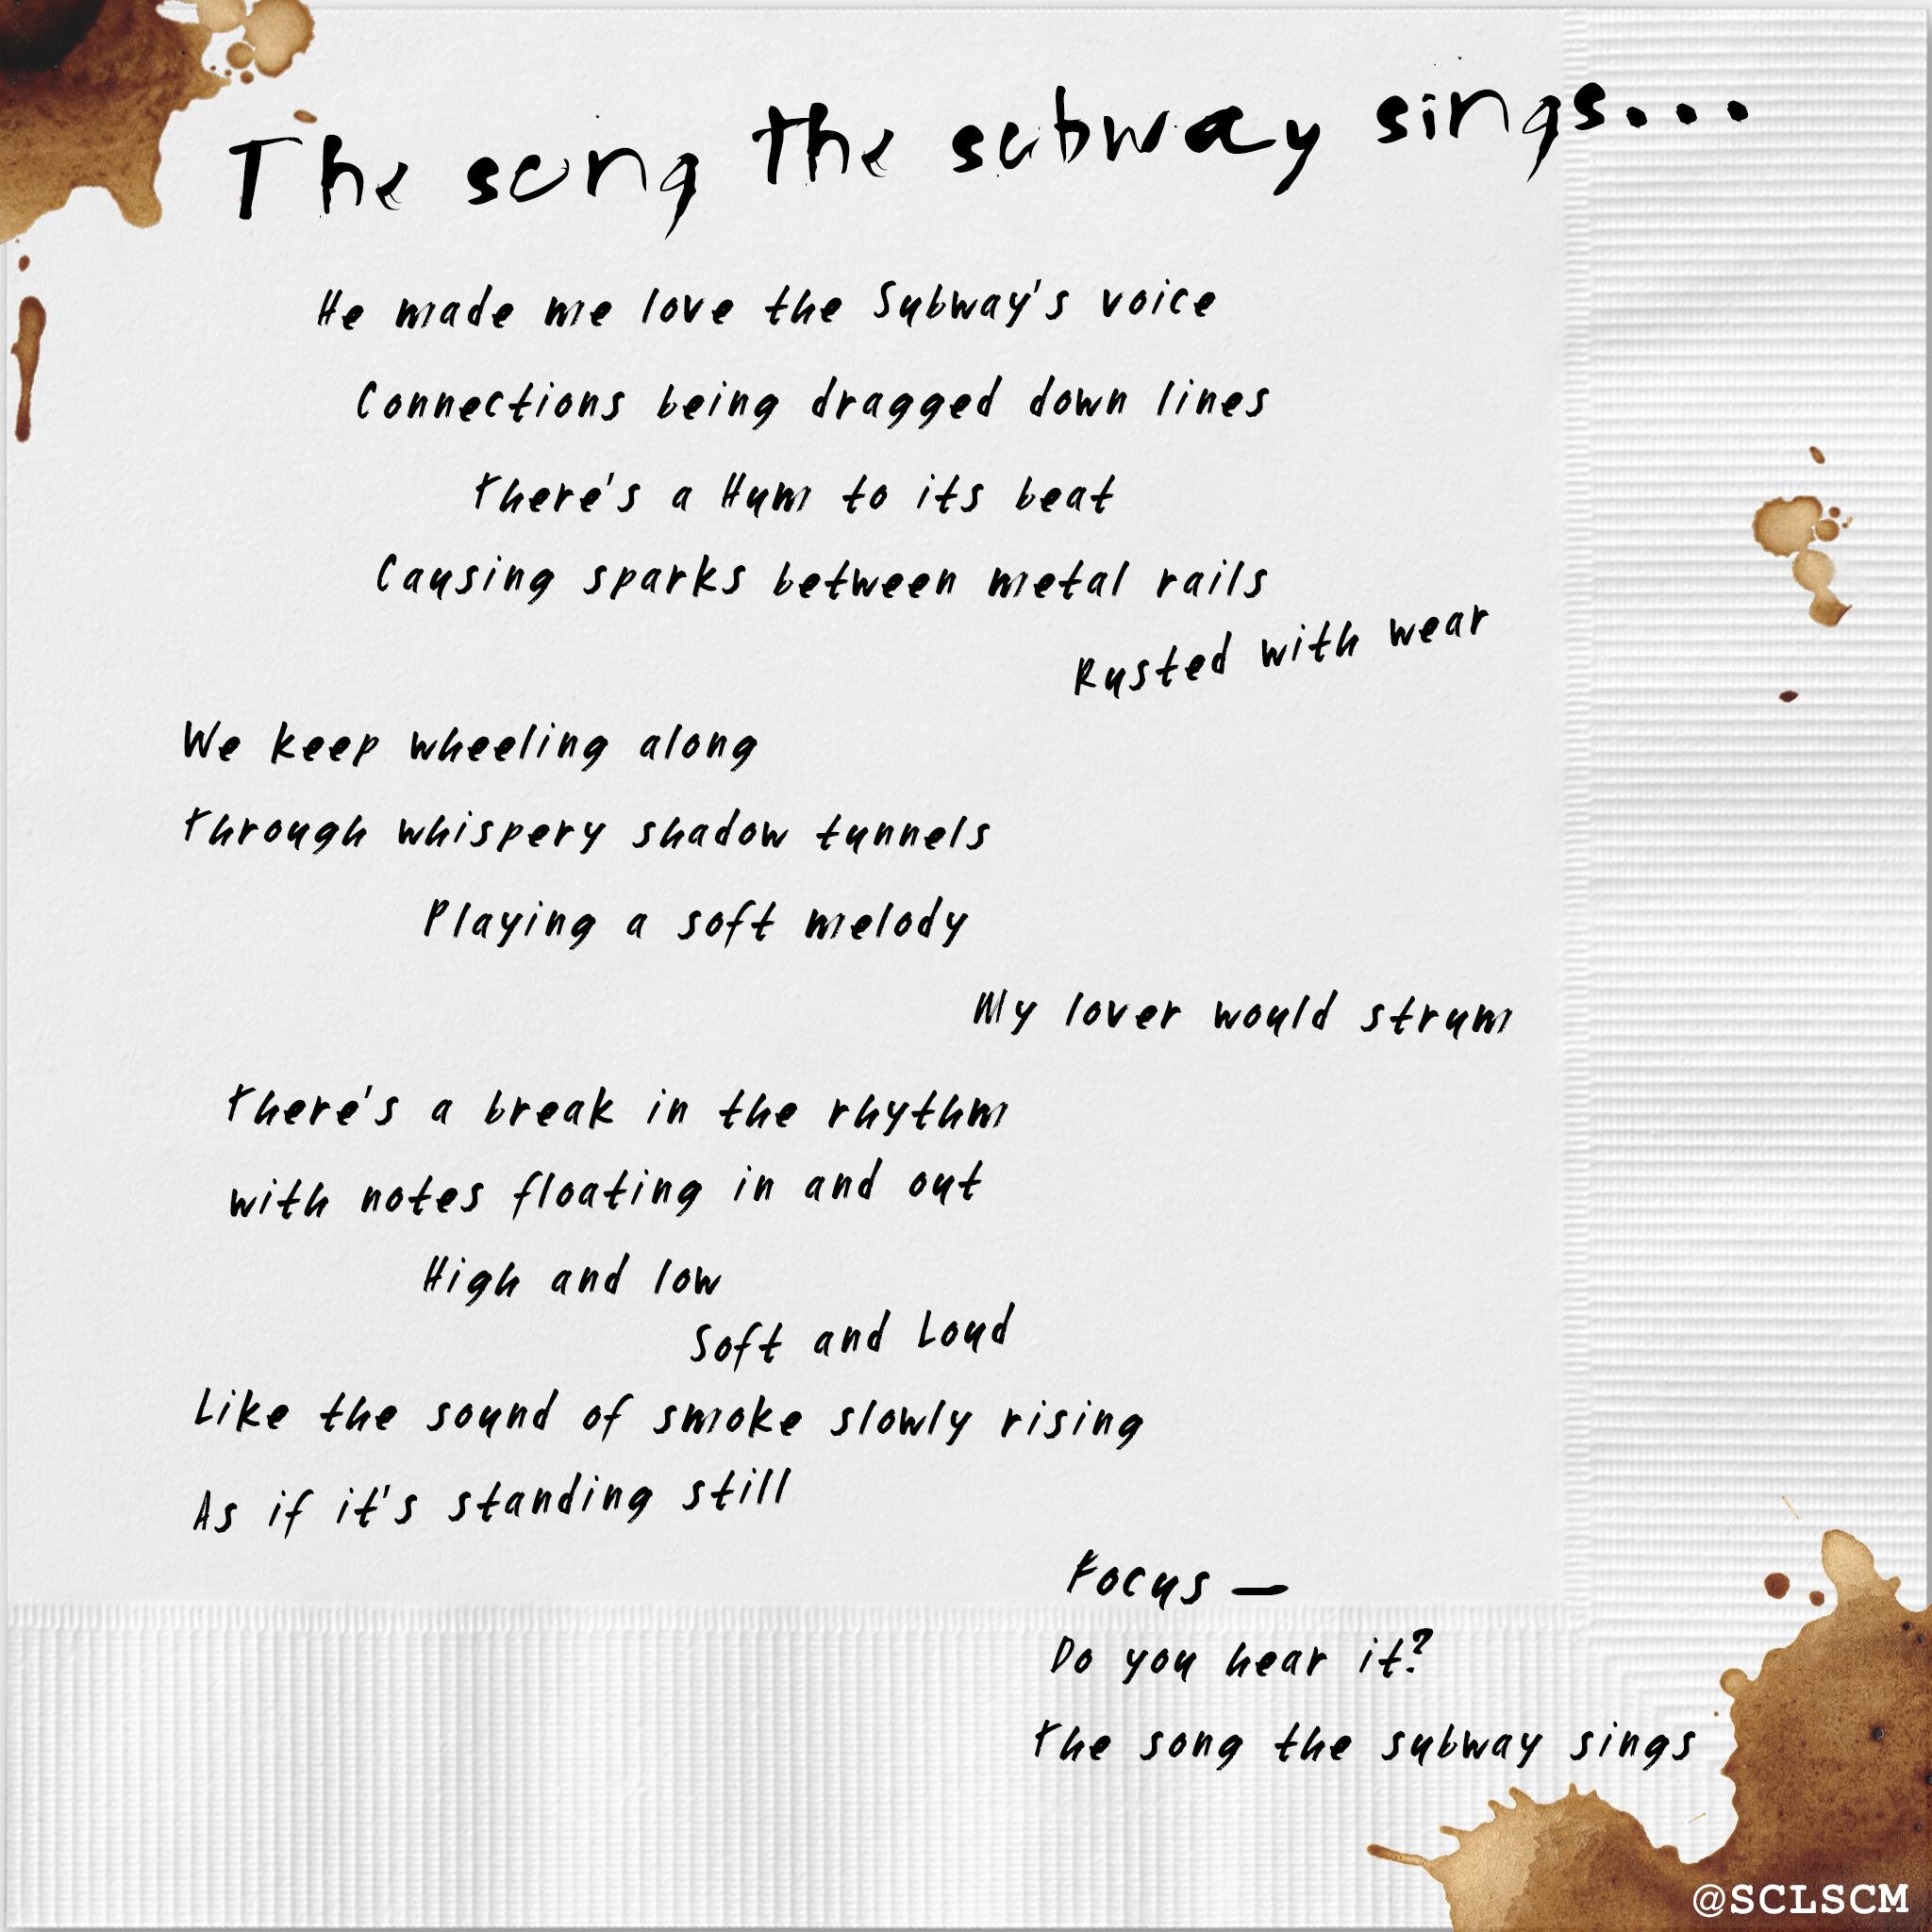 TheSongTheSubwaySings_Poetry Shape_Website.jpg